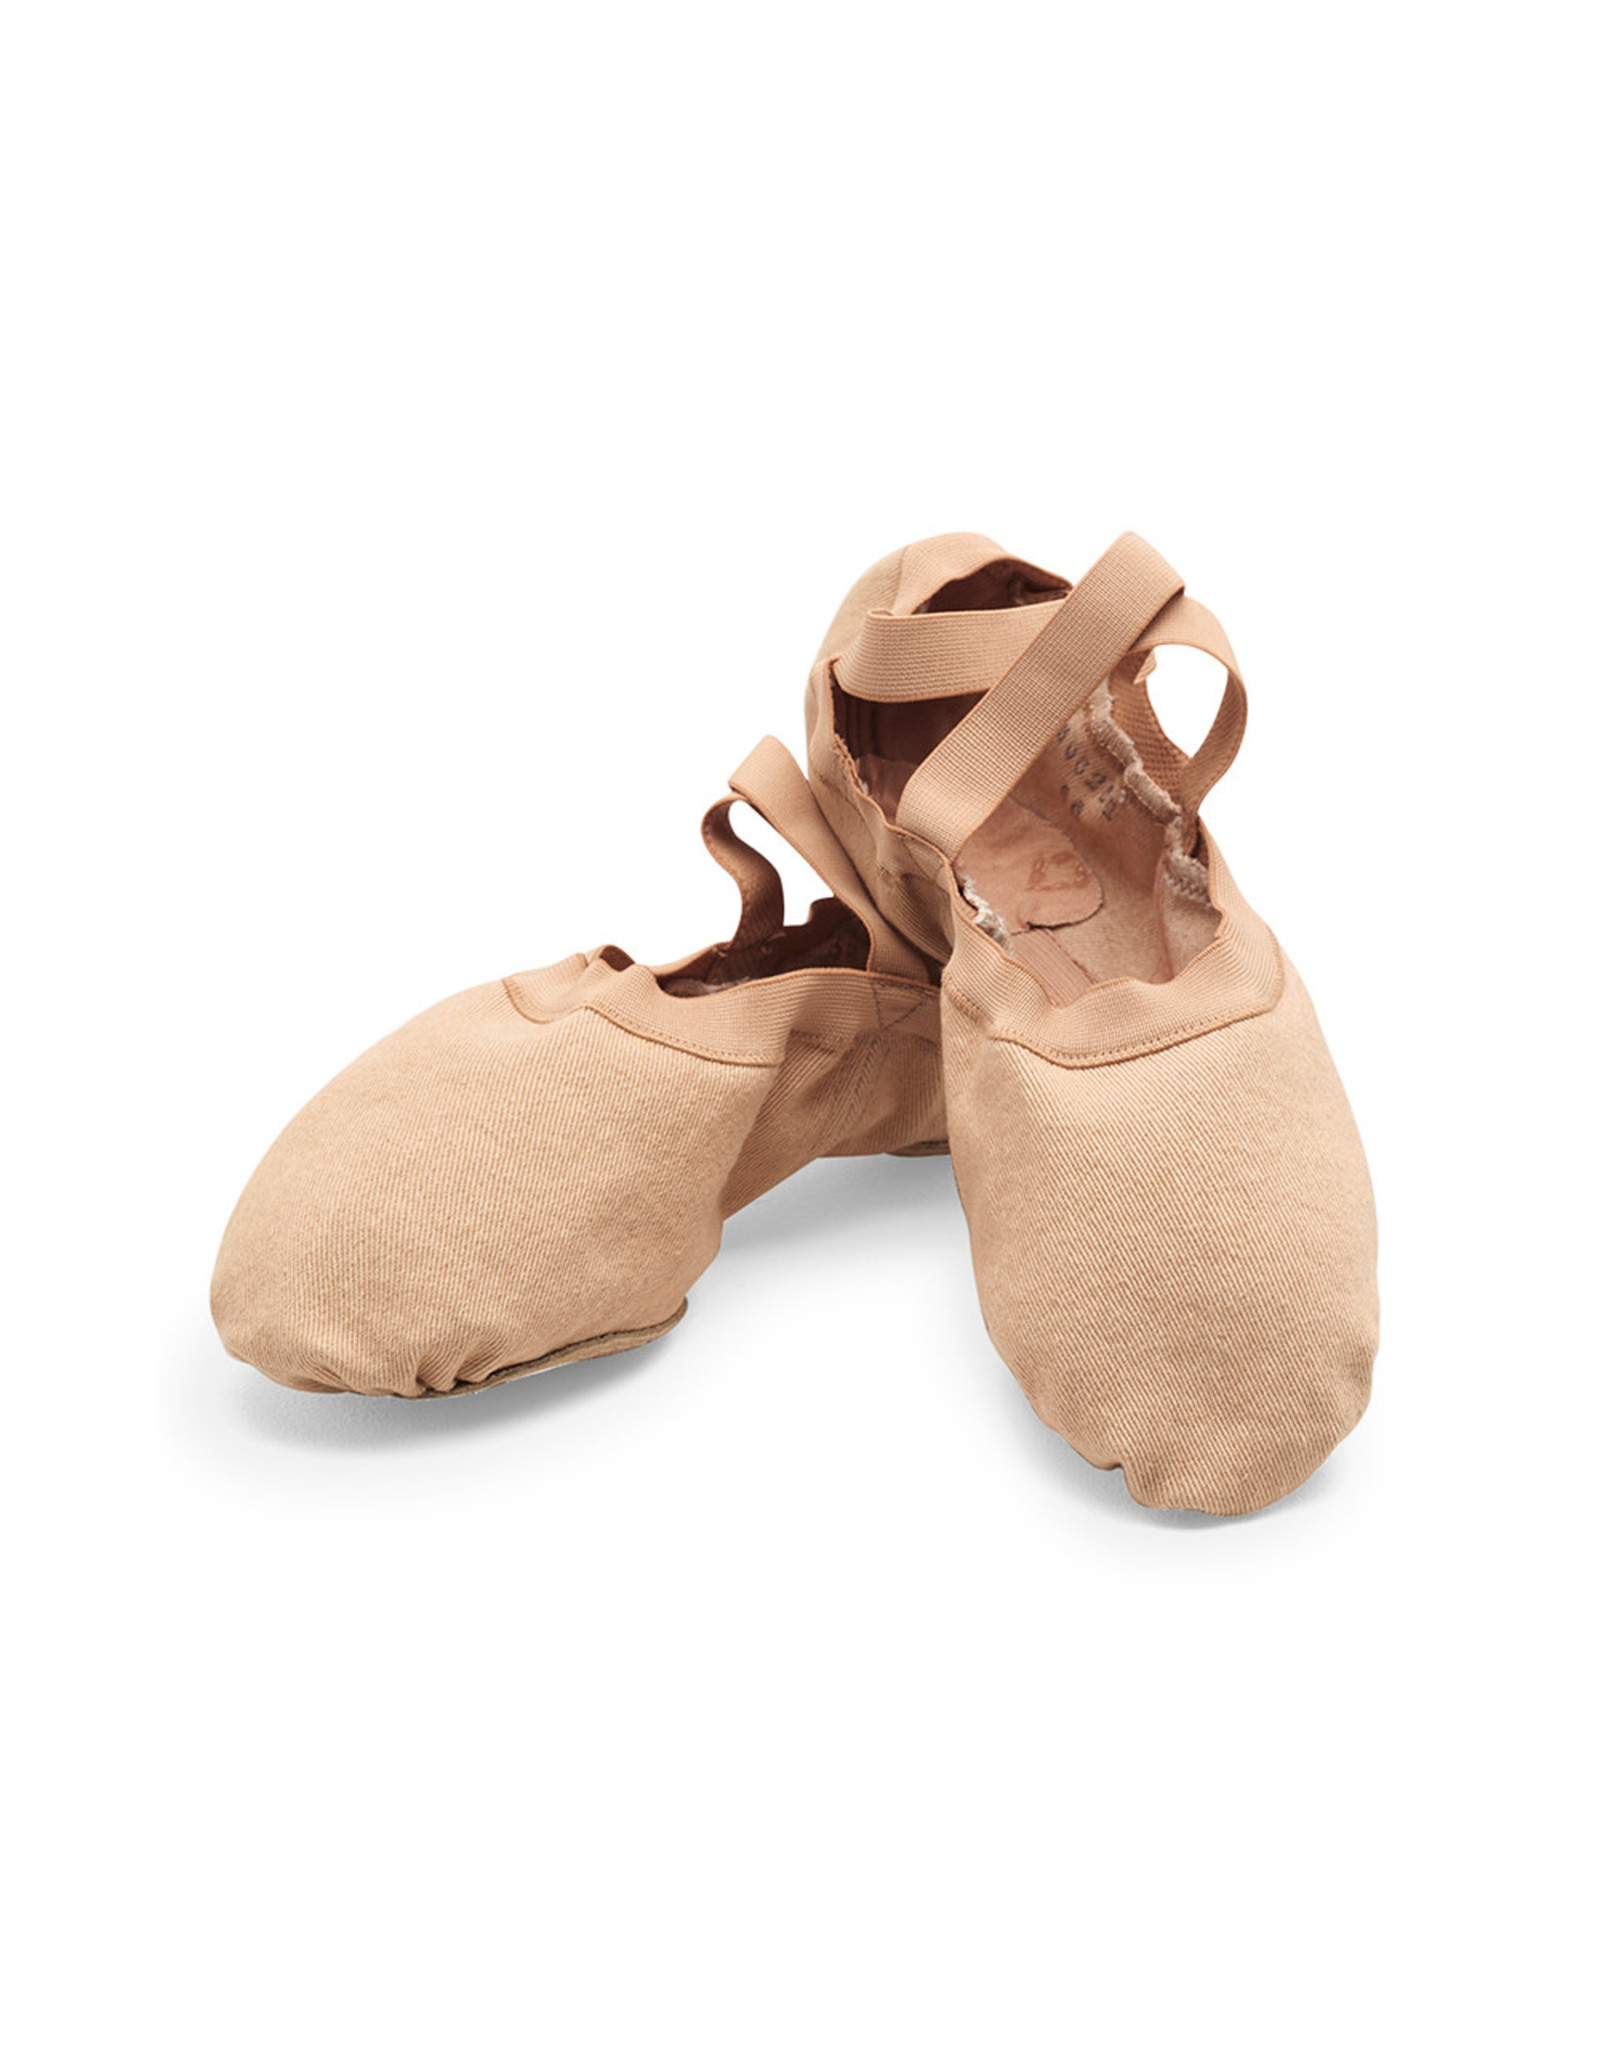 Bloch / Mirella Bloch Men's Synchrony Ballet Shoe (625M) Light Sand